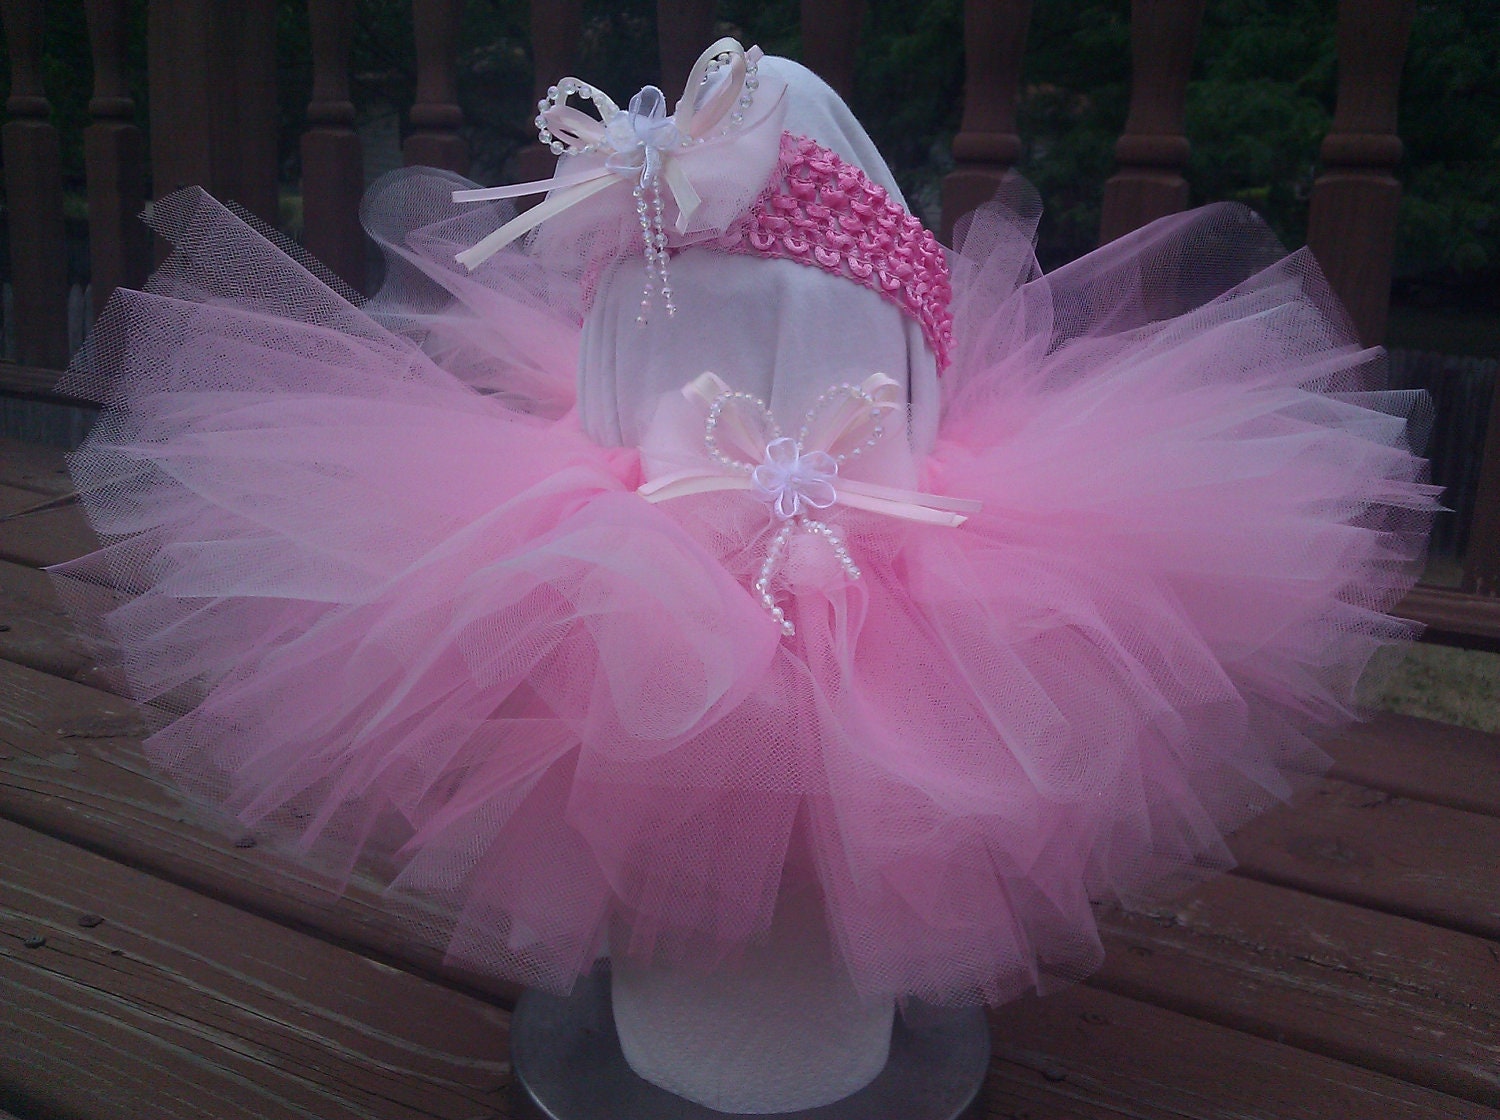 perfectly pink tutu, princess tutu, birthday tutu, girl tutu, newborn tutu, for dress up, dance,  newborn - 4T